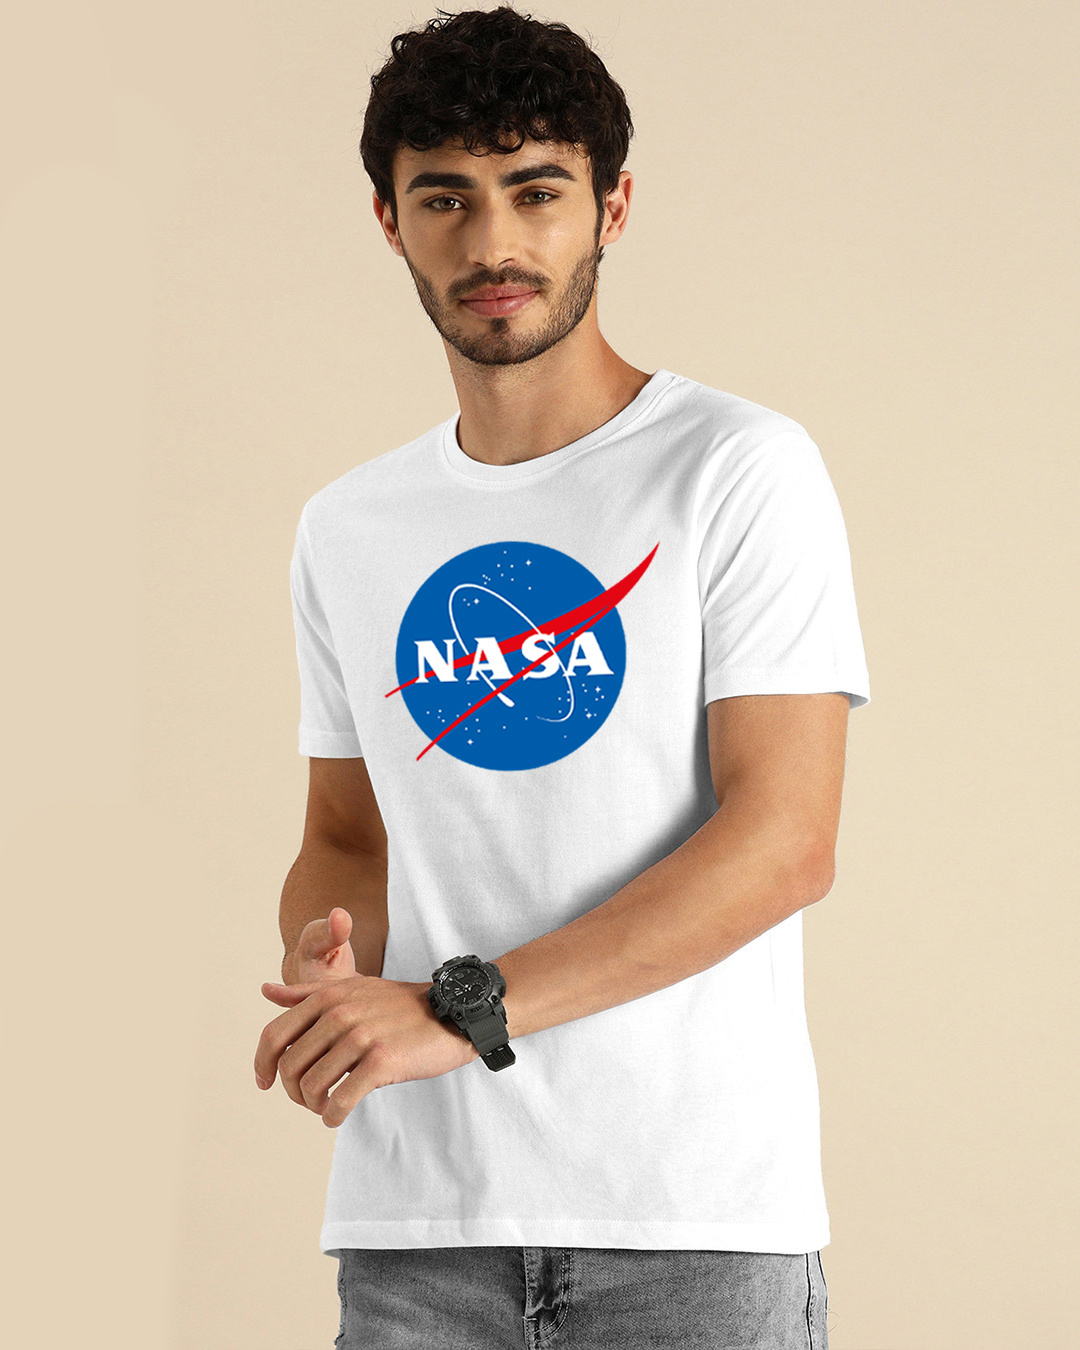 Buy NASA Meatball Logo Half Sleeve T-shirt for Men white Online at Bewakoof